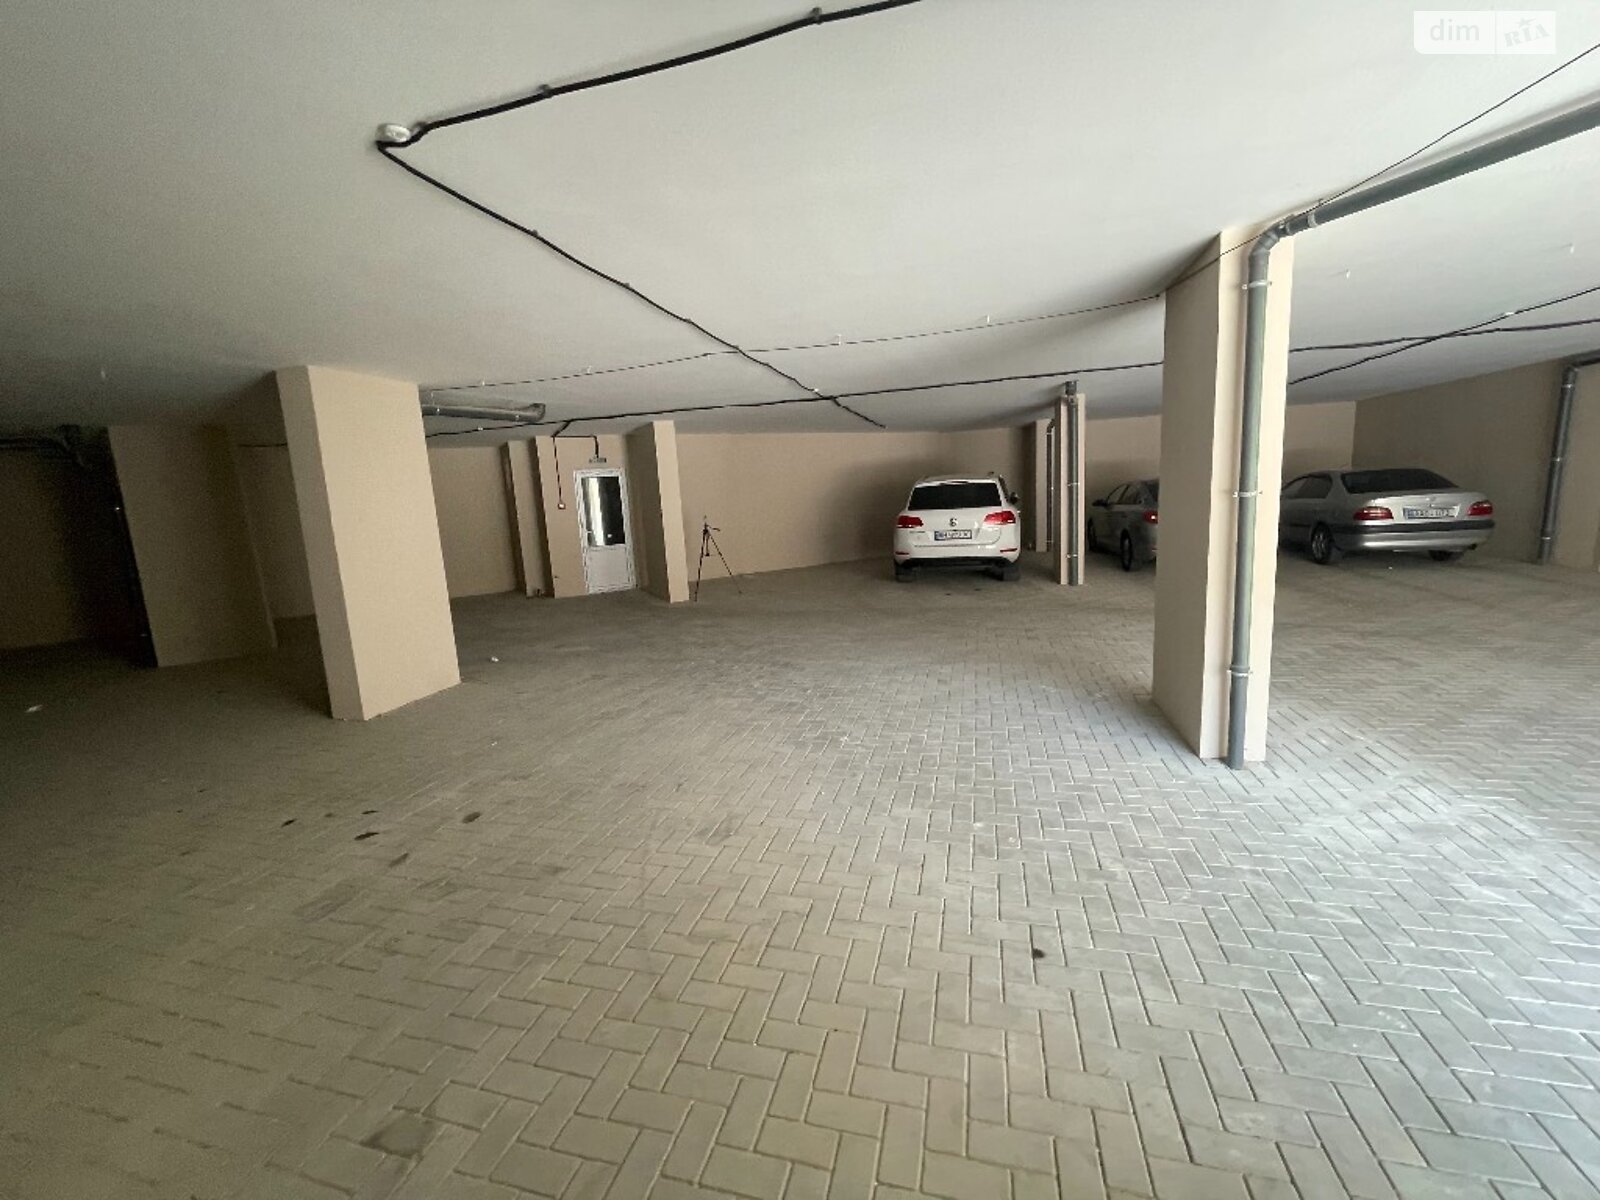 Місце в підземному паркінгу під легкове авто в Одесі, площа 18.4 кв.м. фото 1